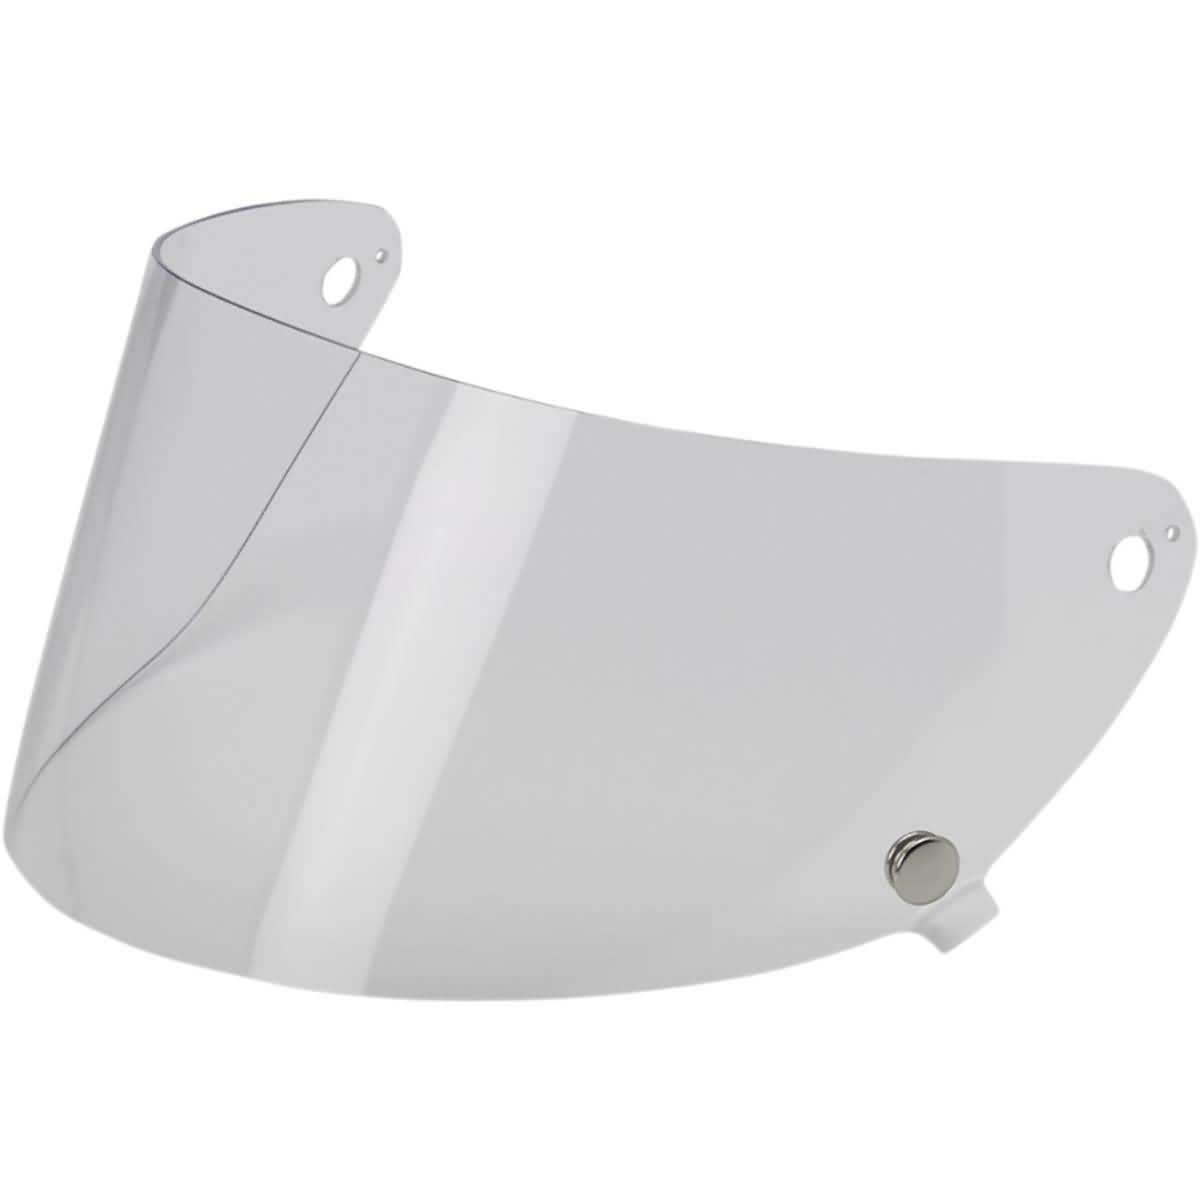 Biltwell Gringo S Flat Shield Anti-Fog Face Shield Helmet Accessories-0130